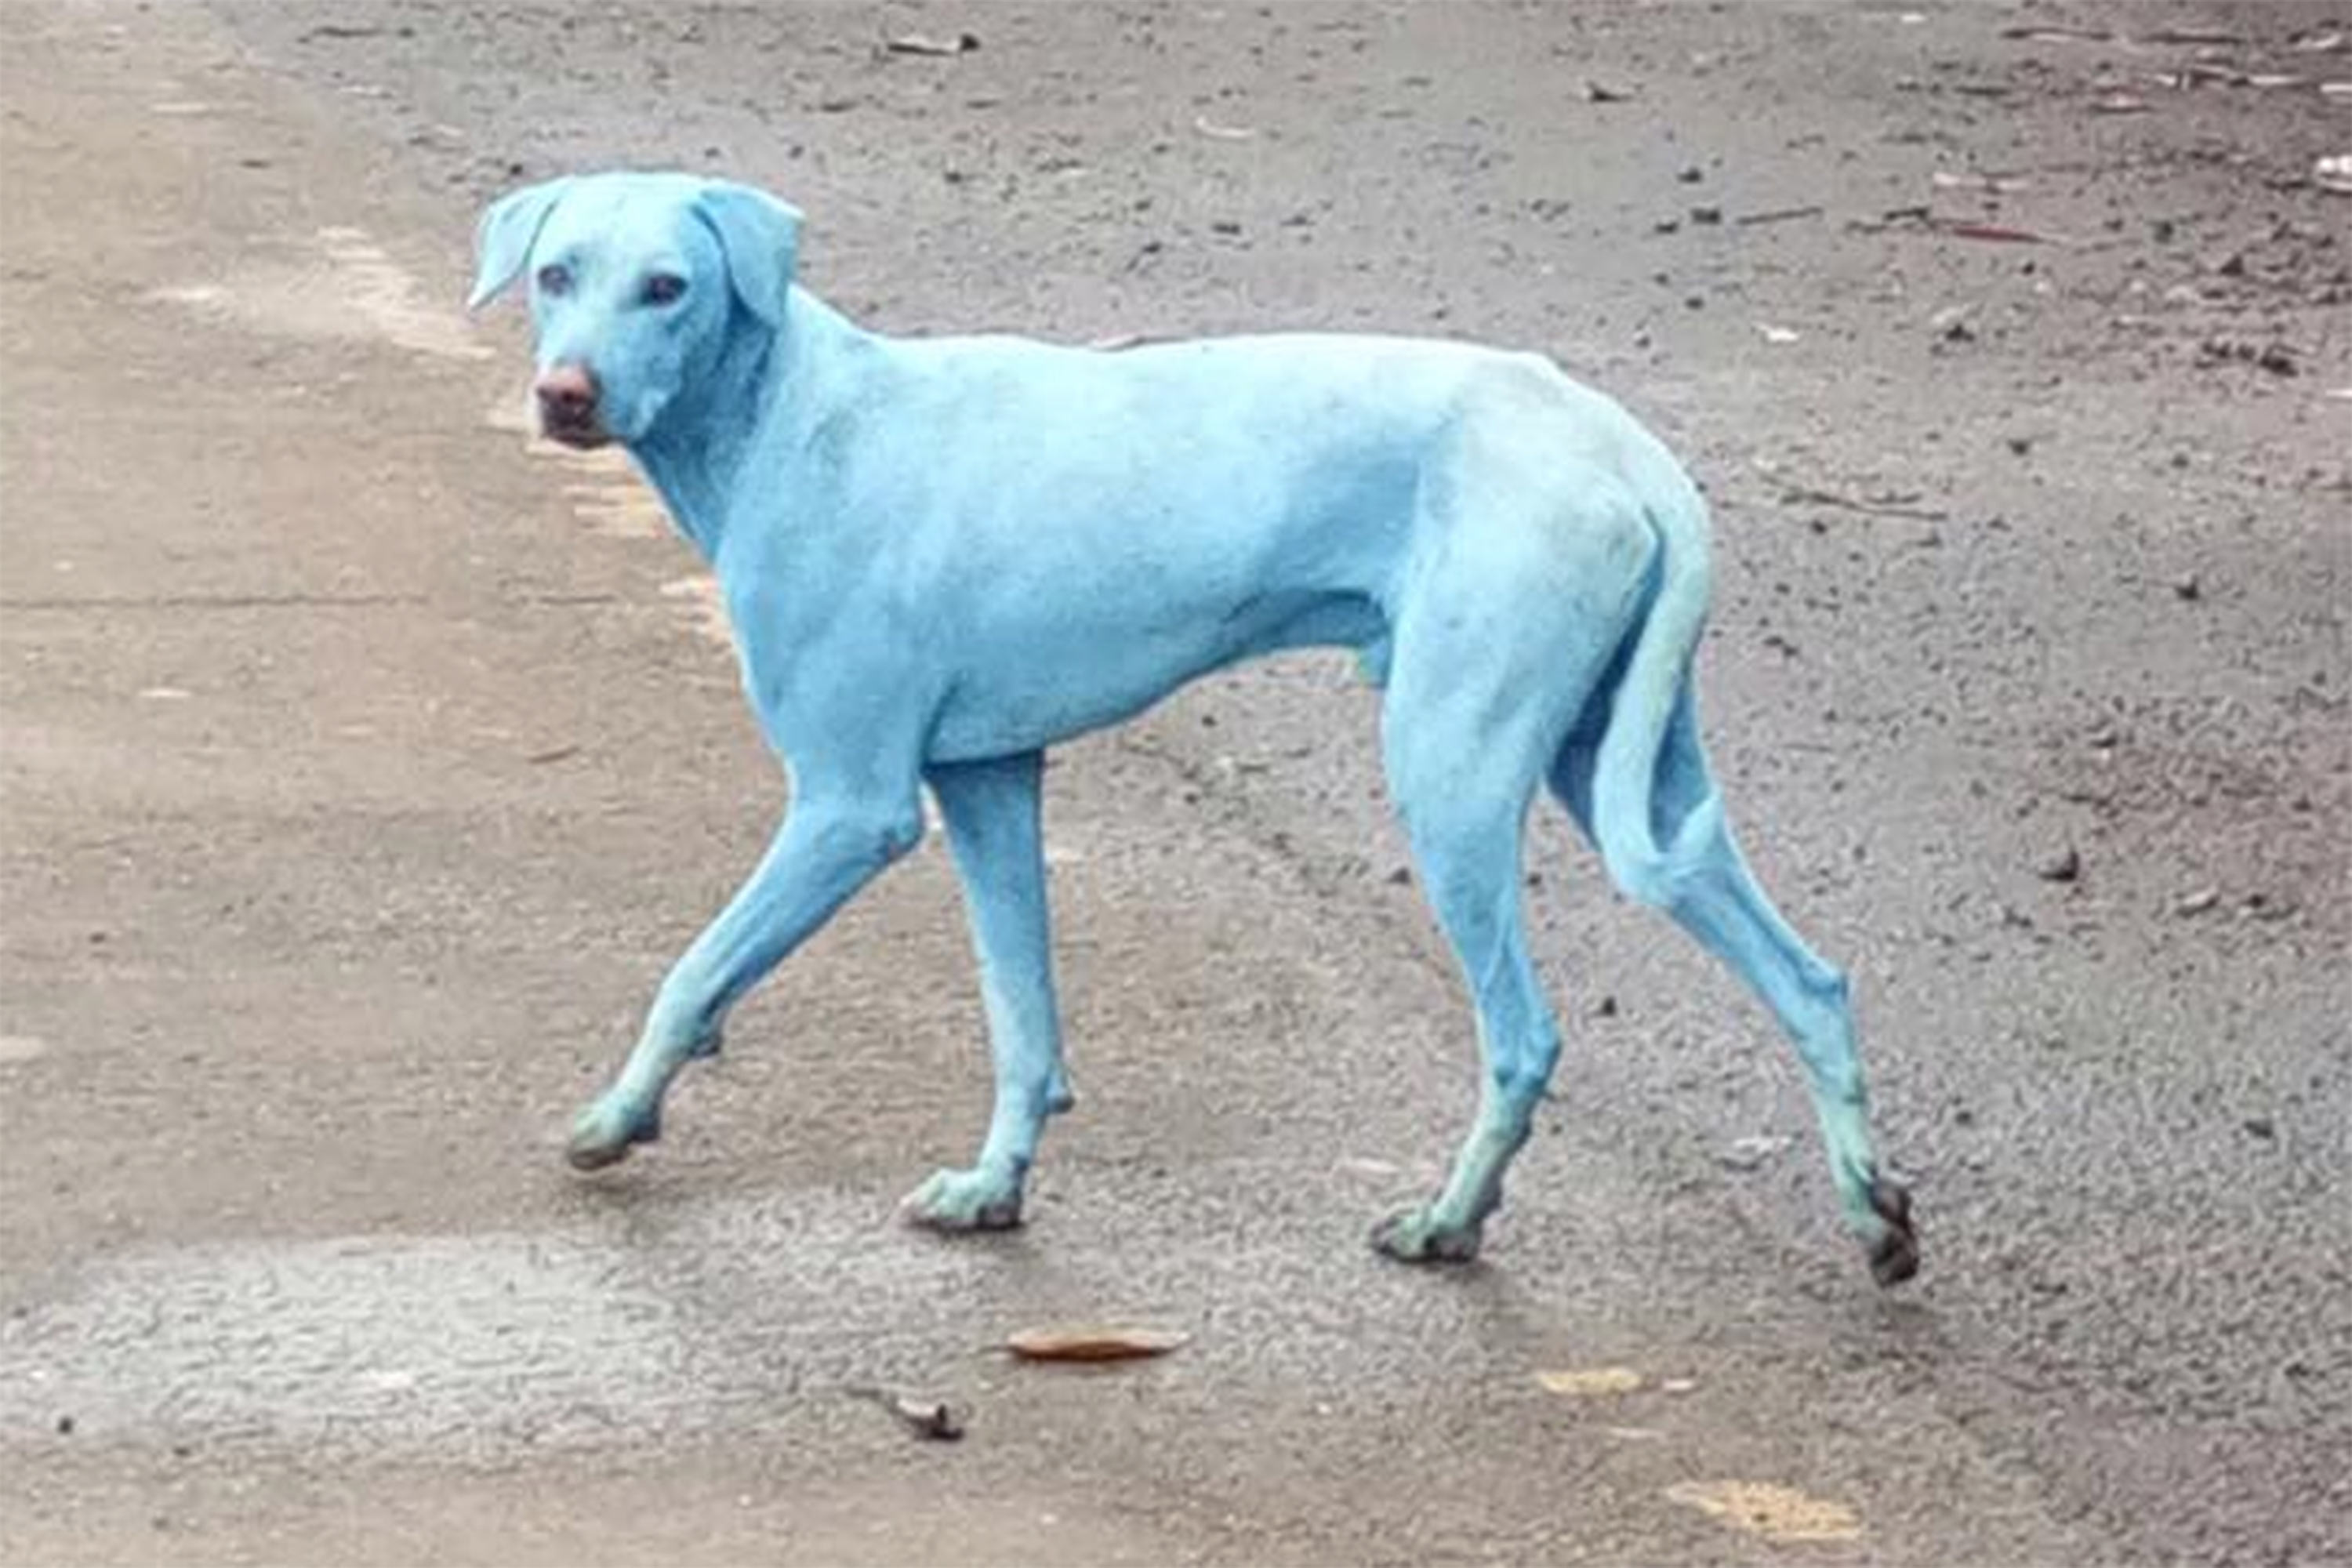 Poluição na Índia está deixando cachorros azuis | VEJA.com